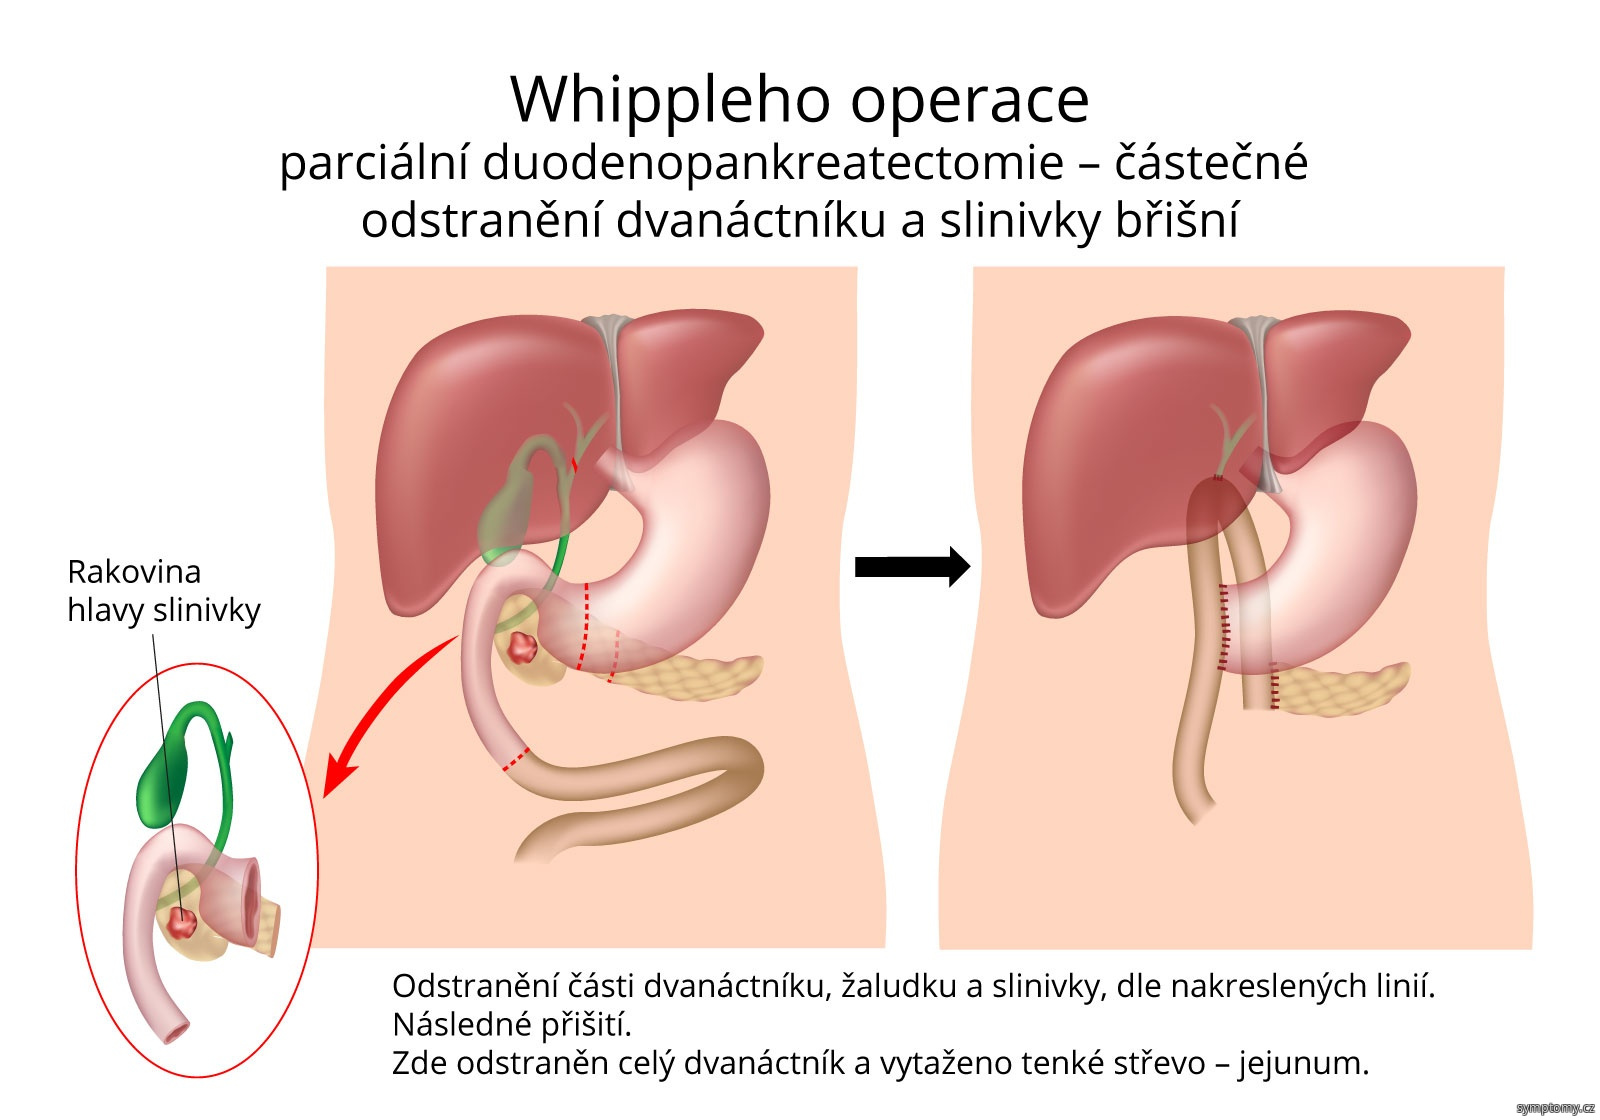 Whippleho operace - částečné odstranění dvanáctníku a slinivky břišní